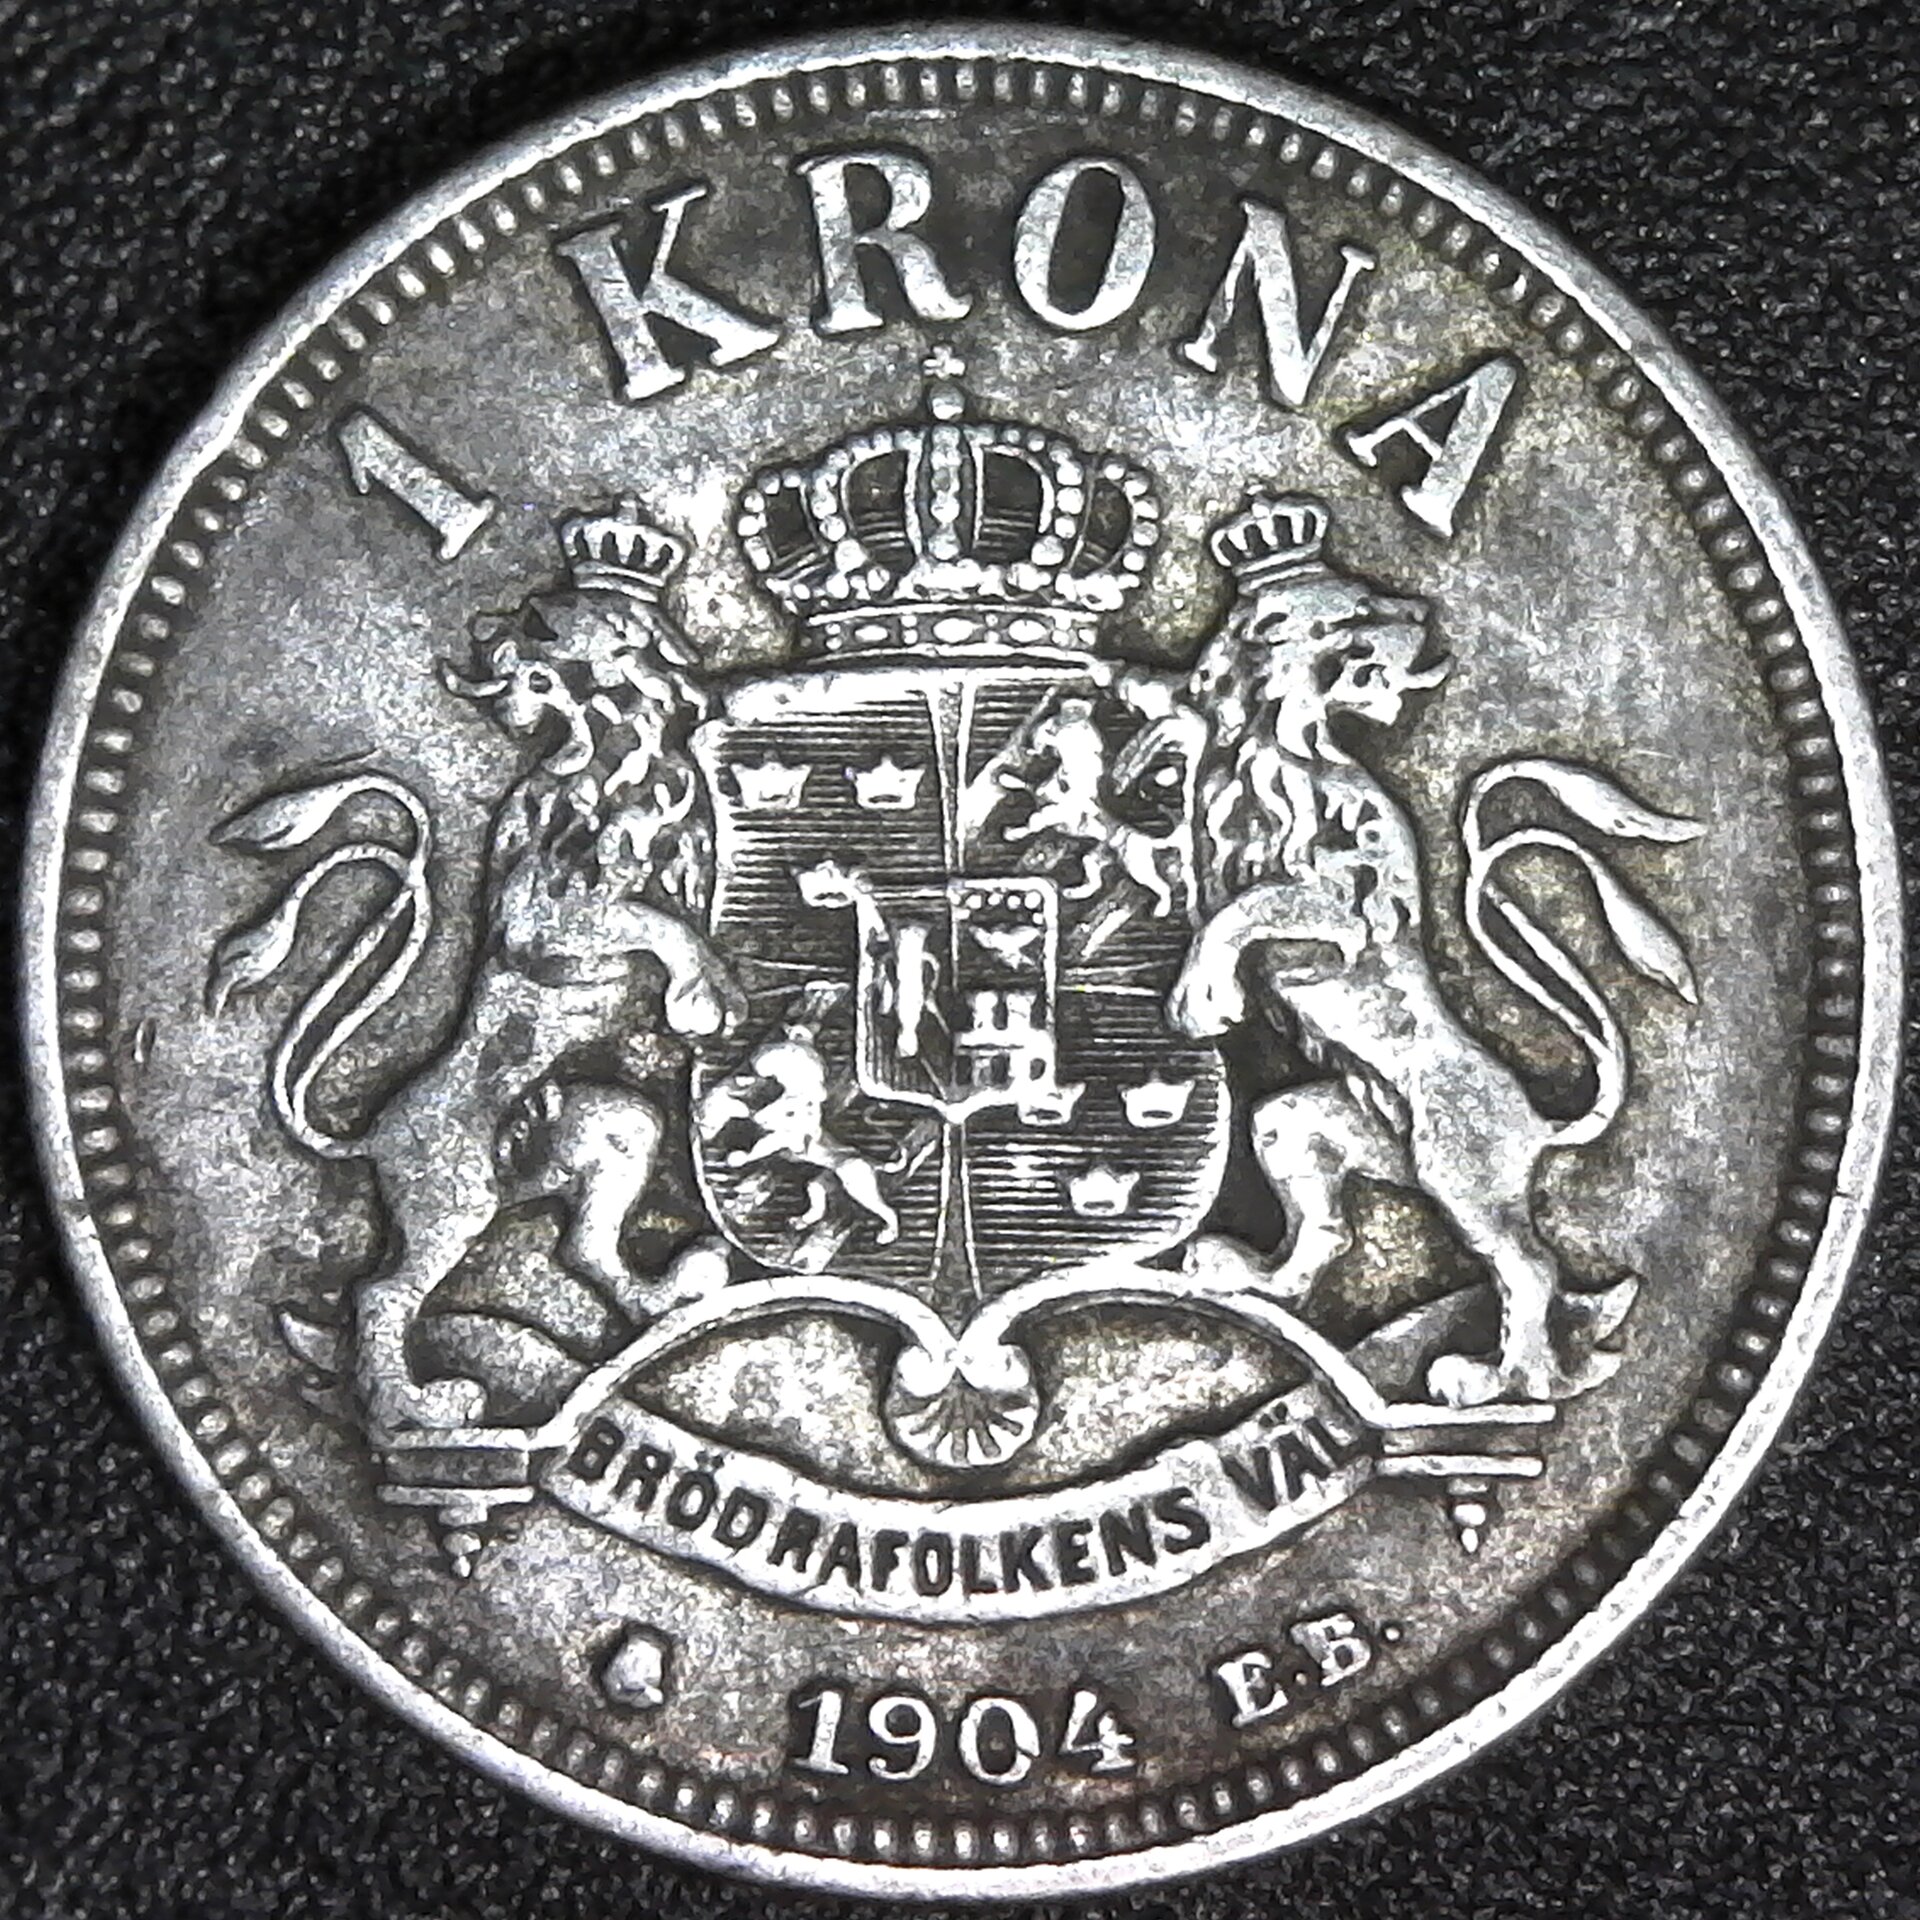 SWEDEN - 1904 - 1 KRONE SILVER - K760 rev A.jpg